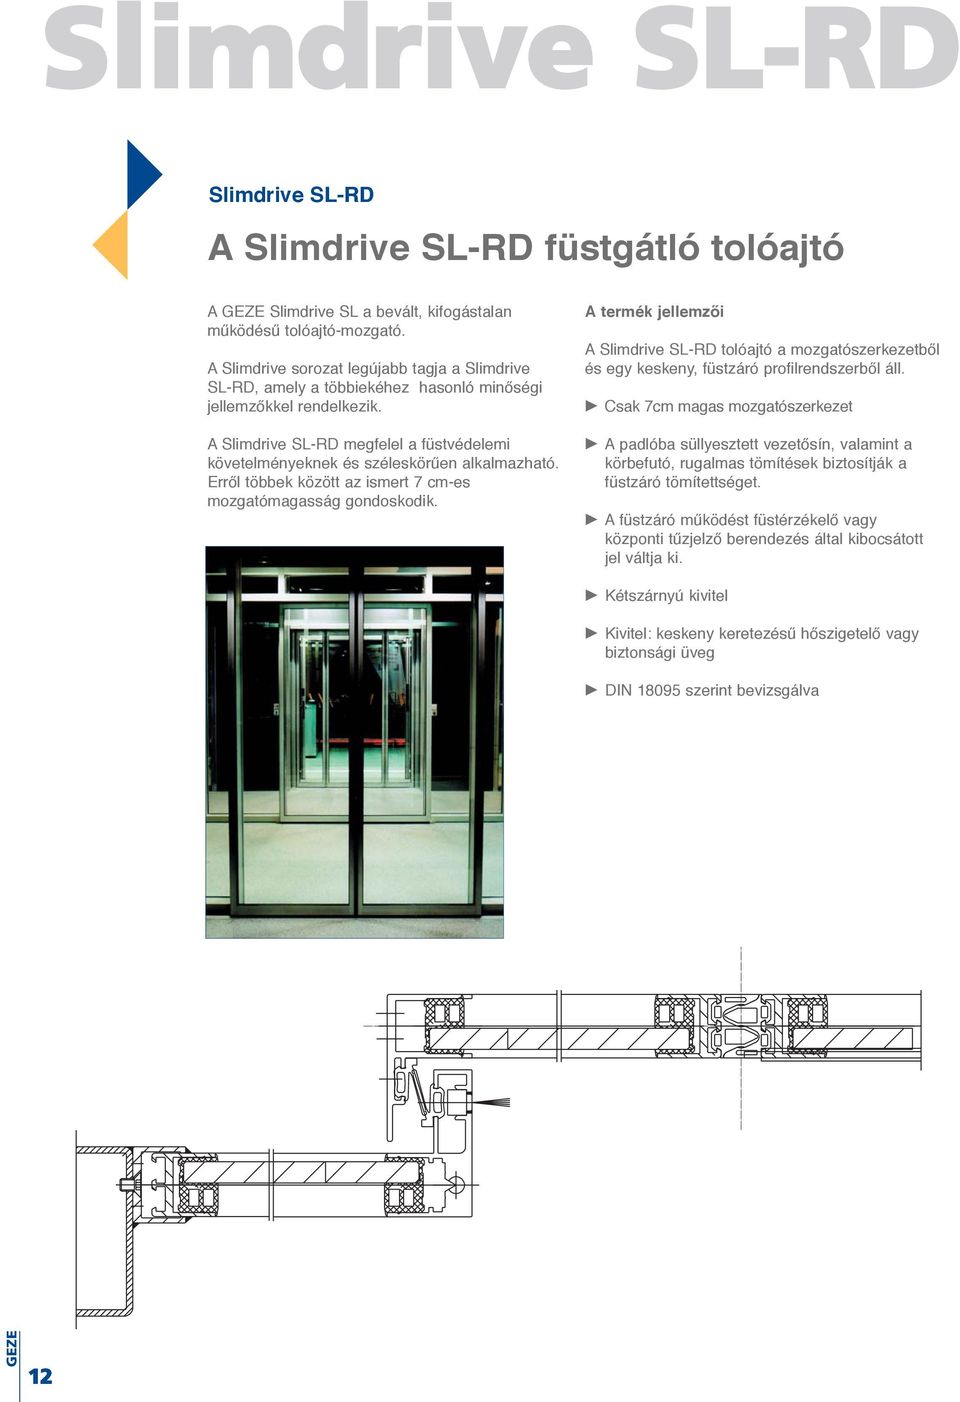 A Slimdrive SL-RD megfelel a füstvédelemi követelményeknek és széleskörűen alkalmazható. Erről többek között az ismert 7 cm-es mozgatómagasság gondoskodik.